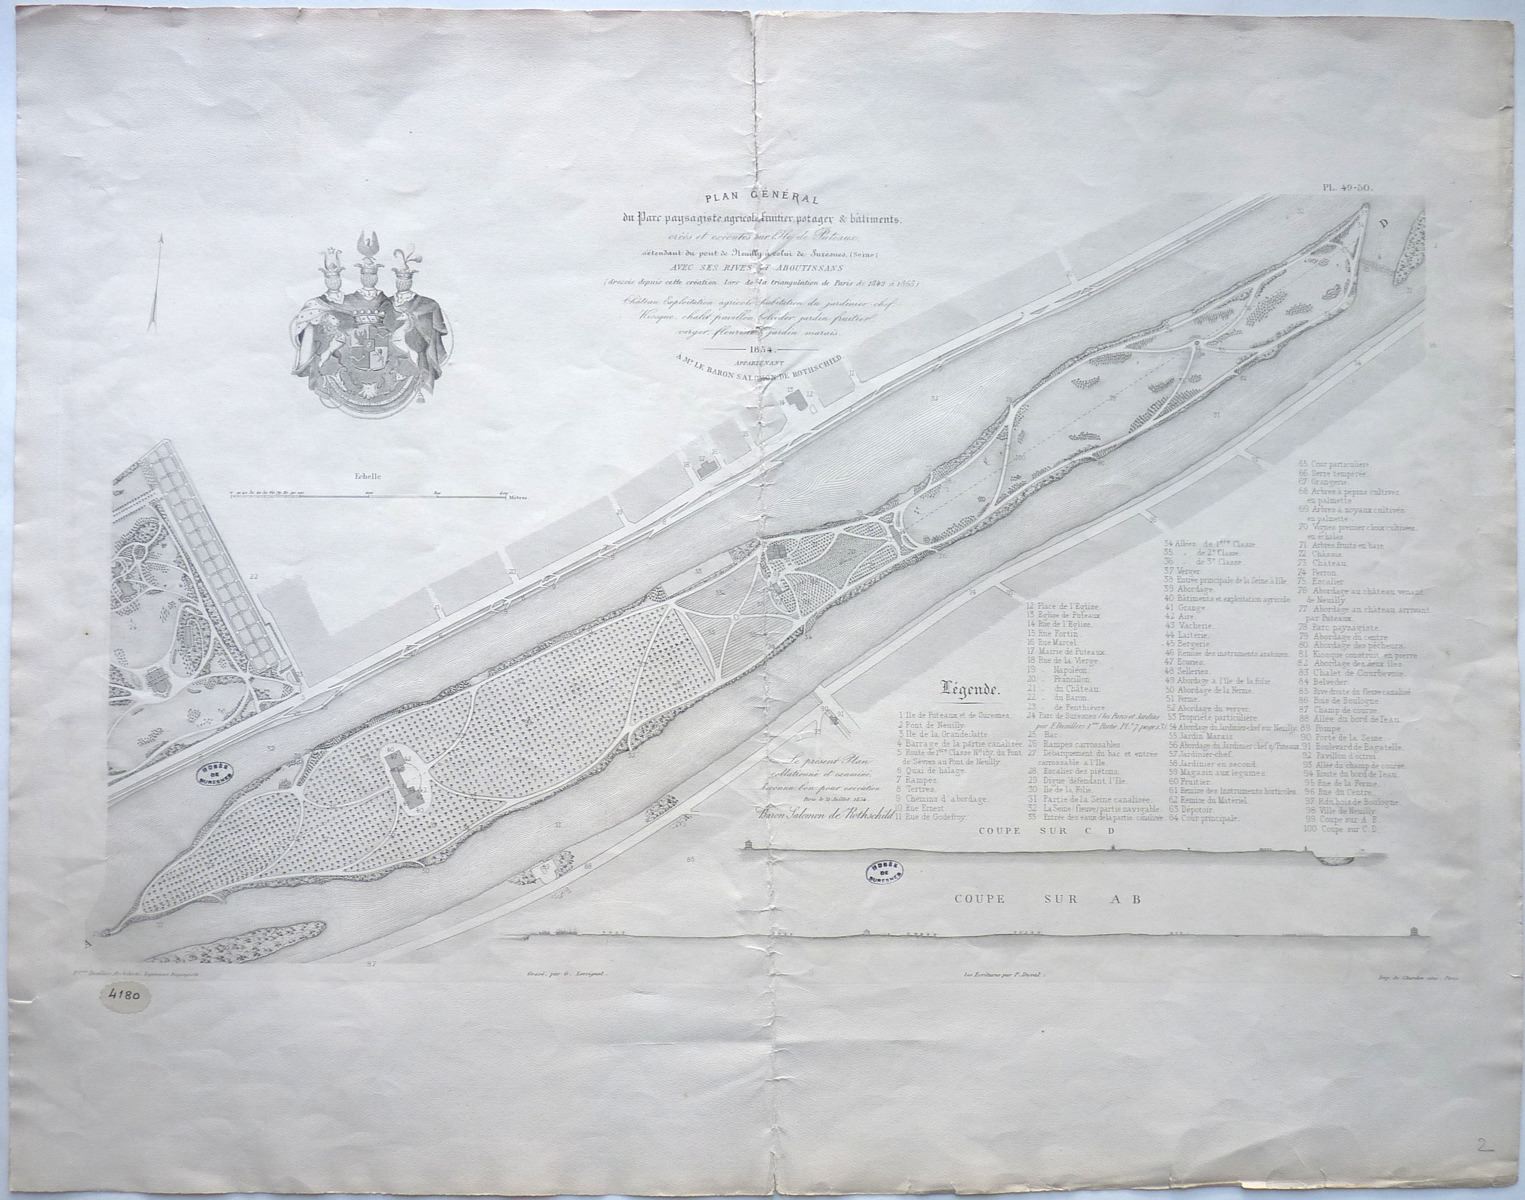 Plan général du Parc paysagiste, agricole fruitier, potager et bâtiments du baron de Rothschild créés et exécutés sur l'Ile de Puteaux.